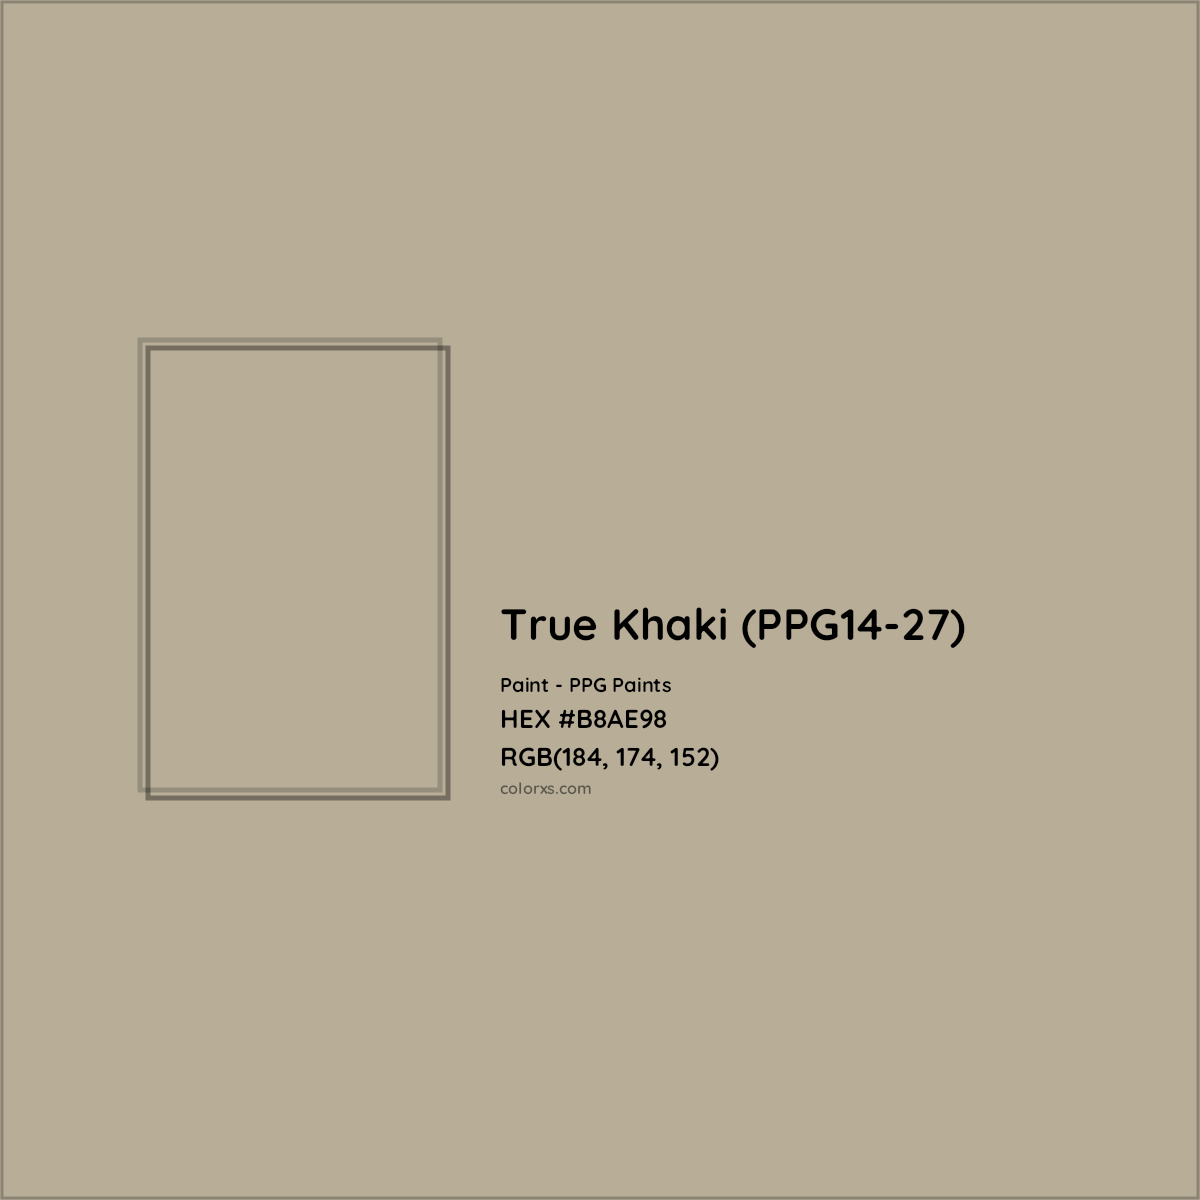 HEX #B8AE98 True Khaki (PPG14-27) Paint PPG Paints - Color Code